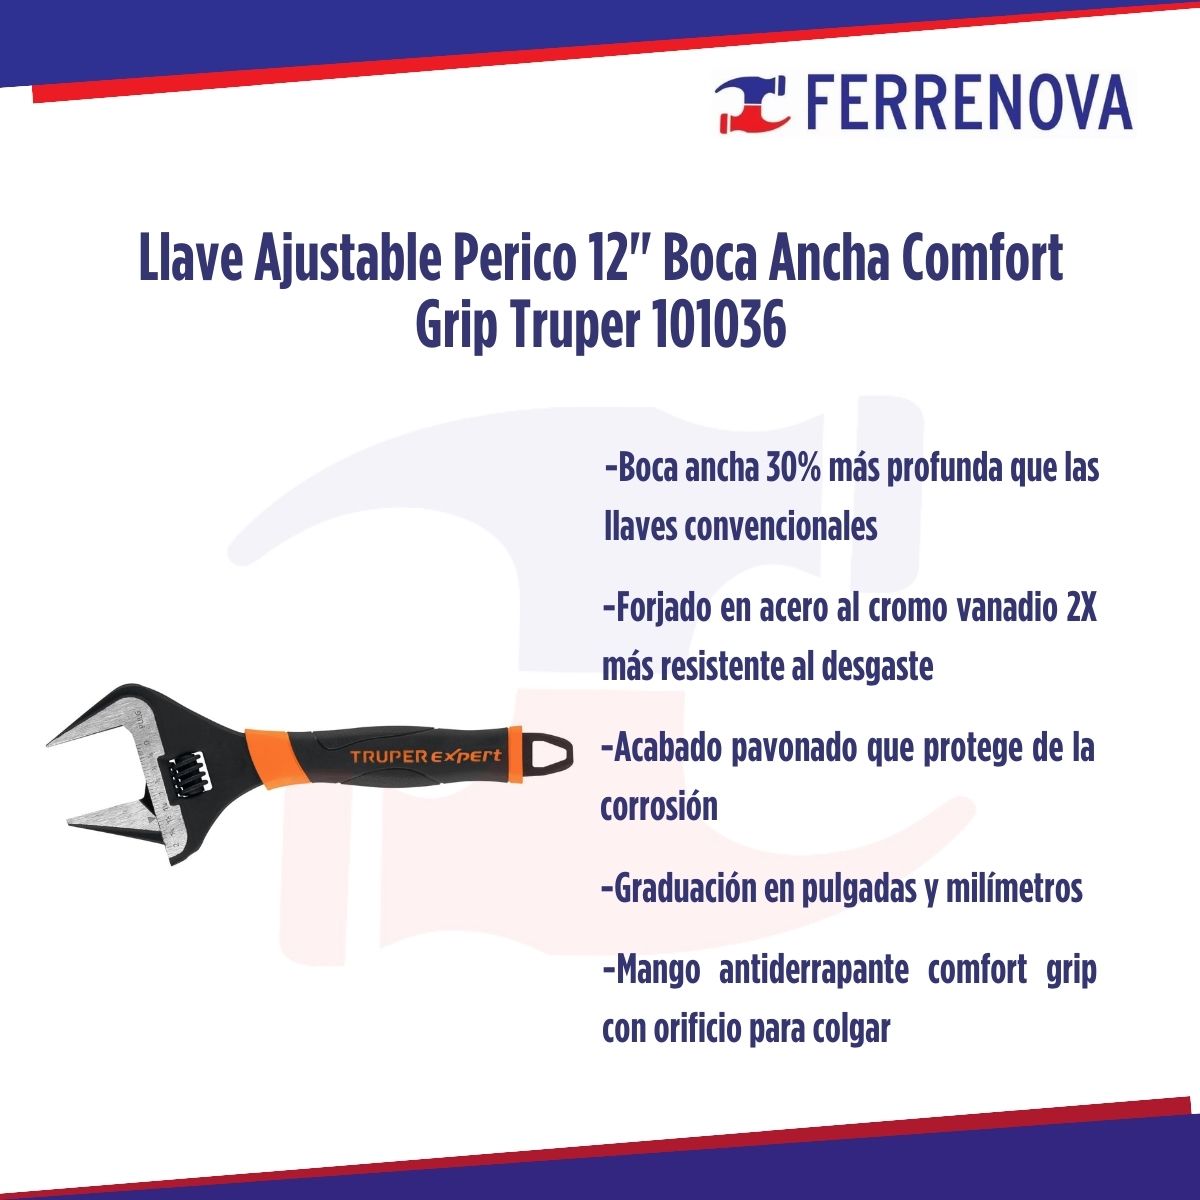 Llave Ajustable Perico 12" Boca Ancha Comfort Grip Truper 101036